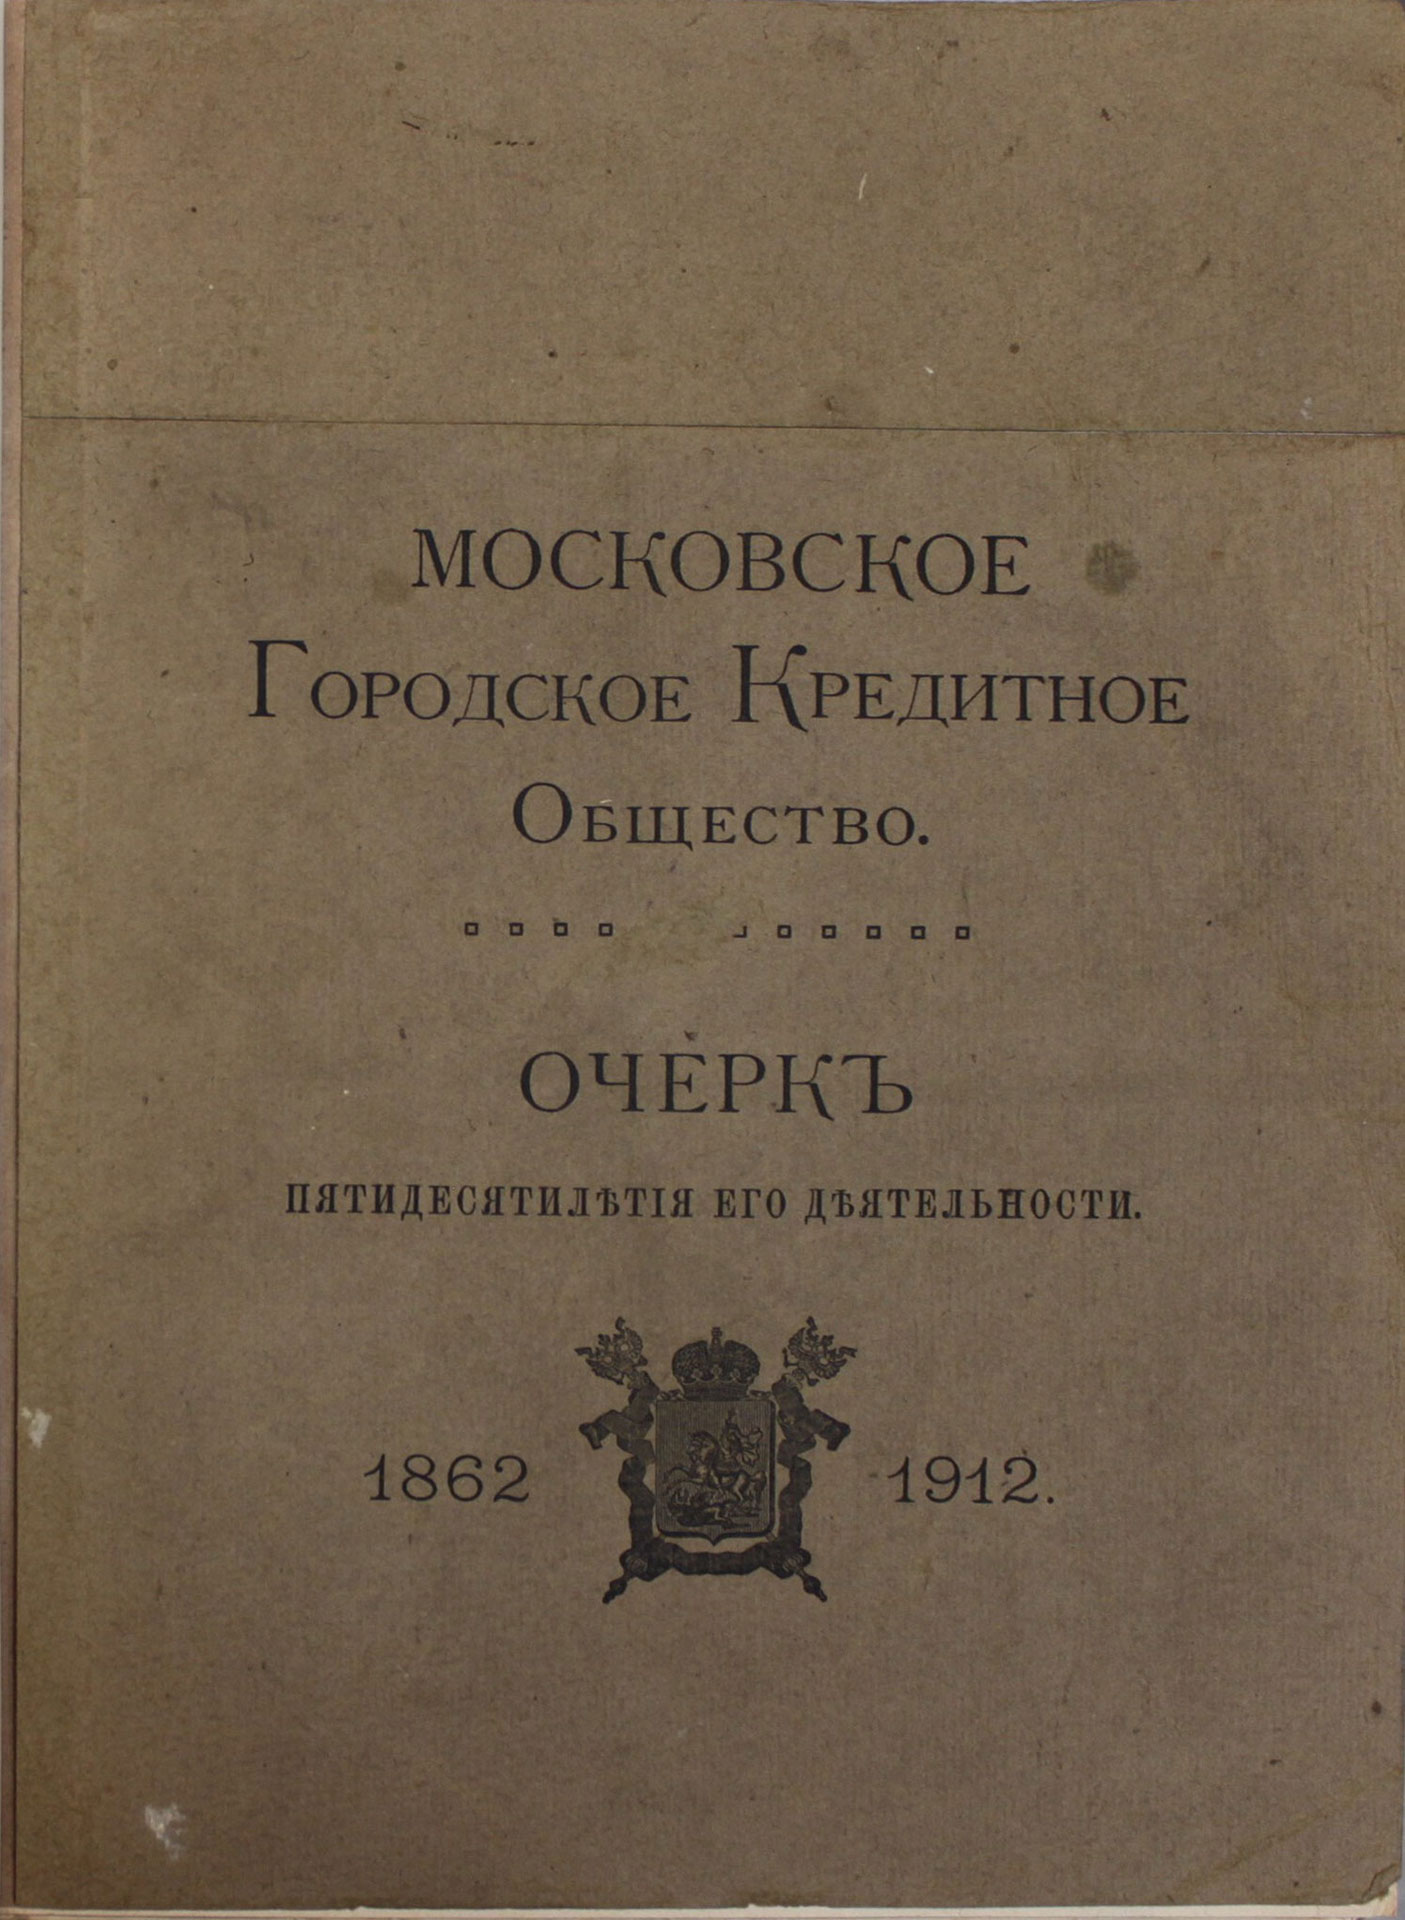 Gorodskoe kreditnoe obshchestvo. Moscow. 1916/City Credit Company. Moscow. 1916 - landofmagazines.com